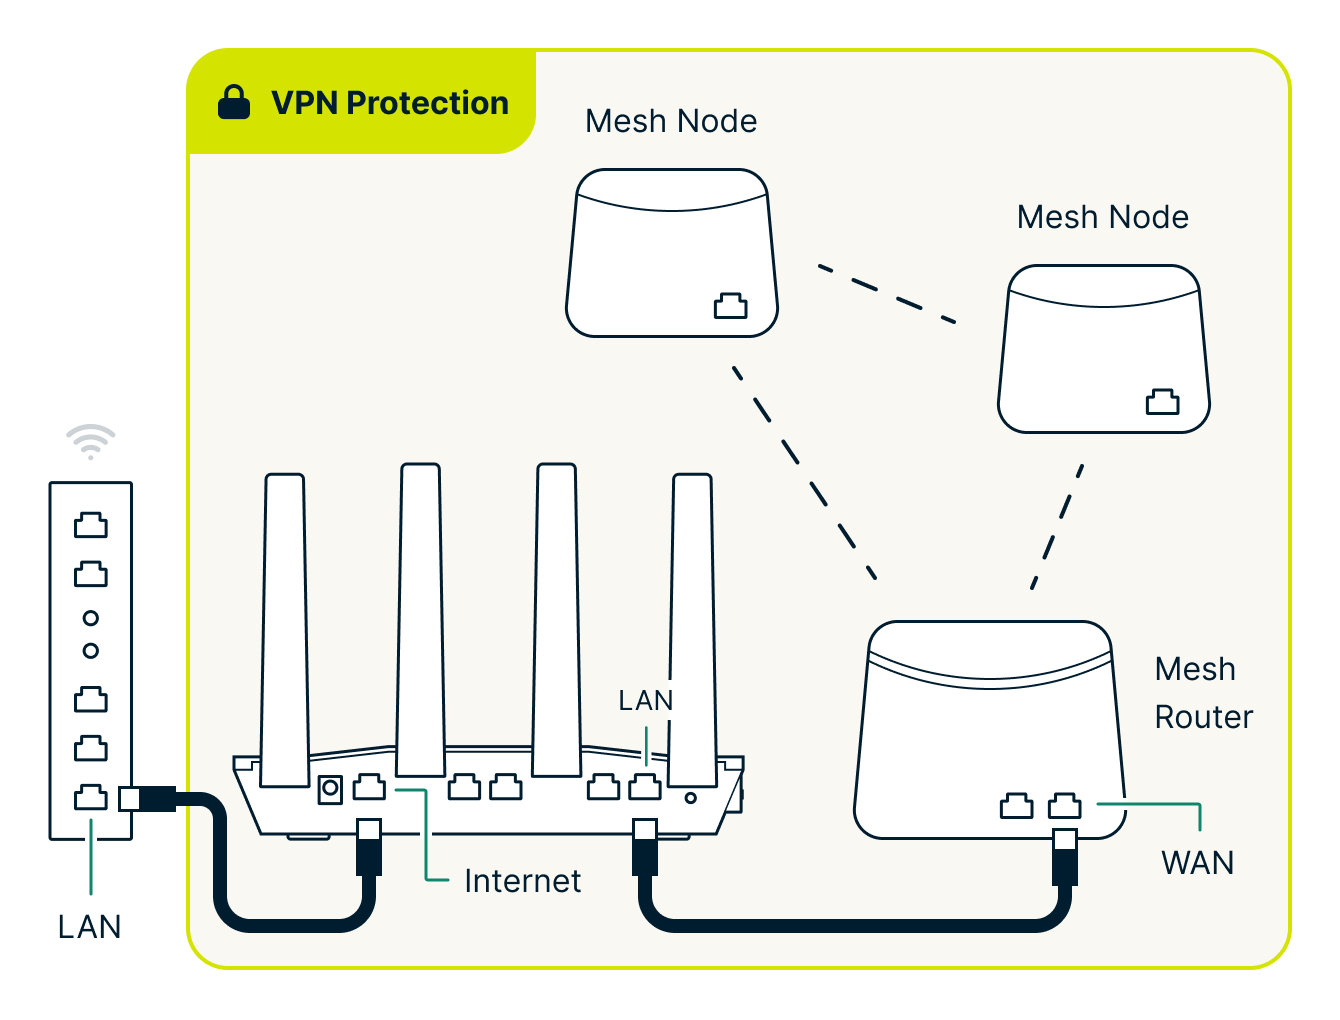 Aircove verbonden met het lan van de router van de provider, het gehele netwerk beschermend